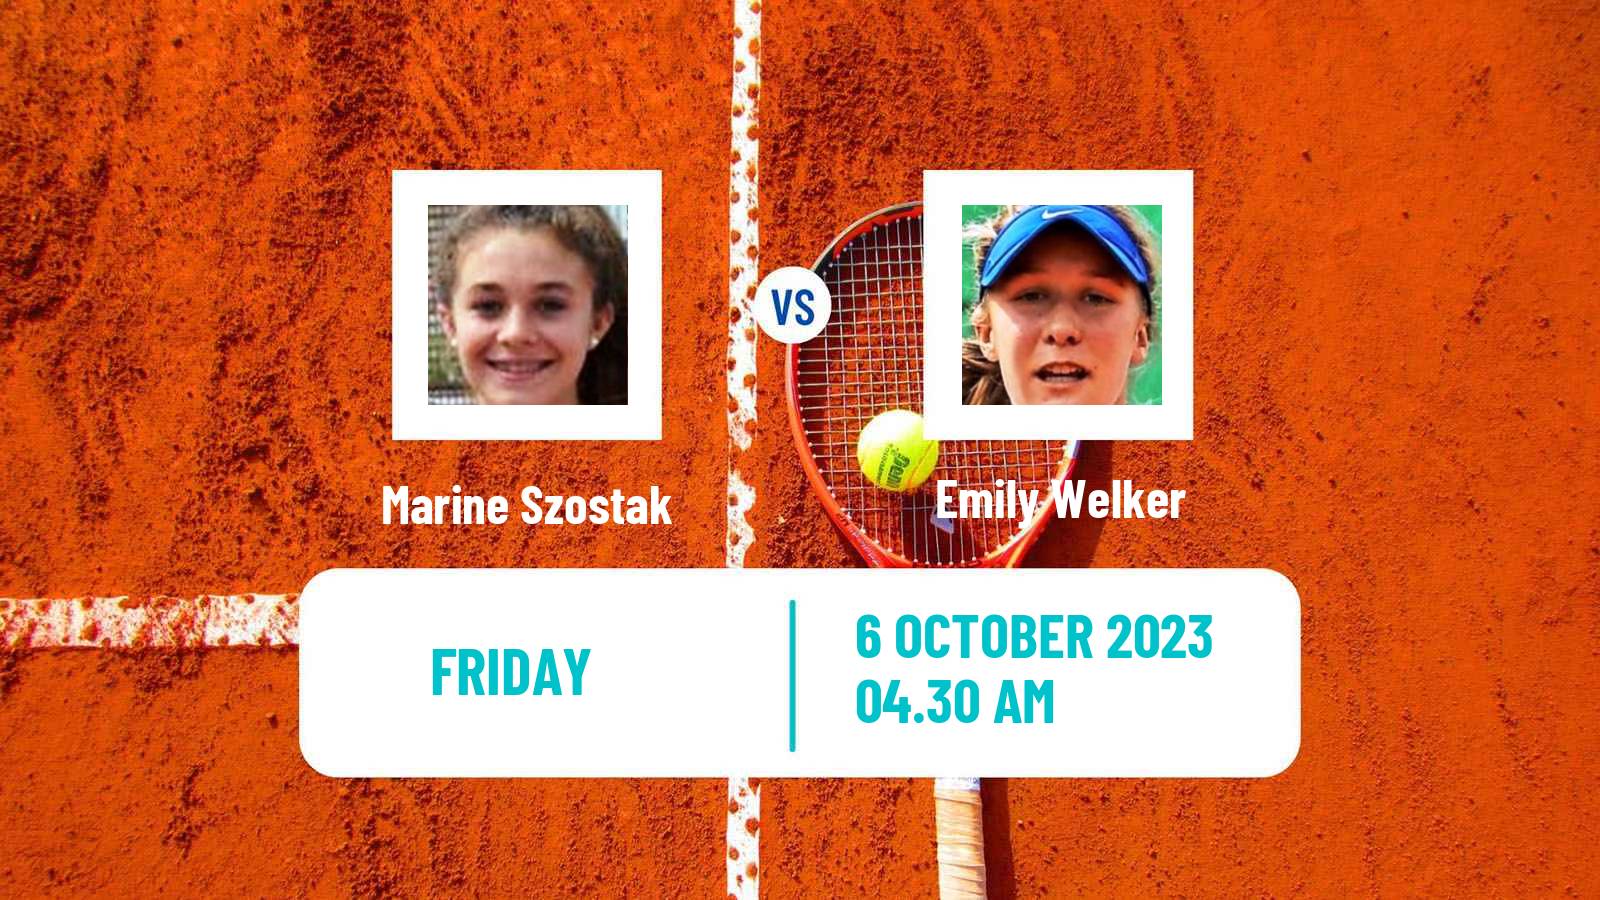 Tennis ITF W15 Monastir 35 Women Marine Szostak - Emily Welker